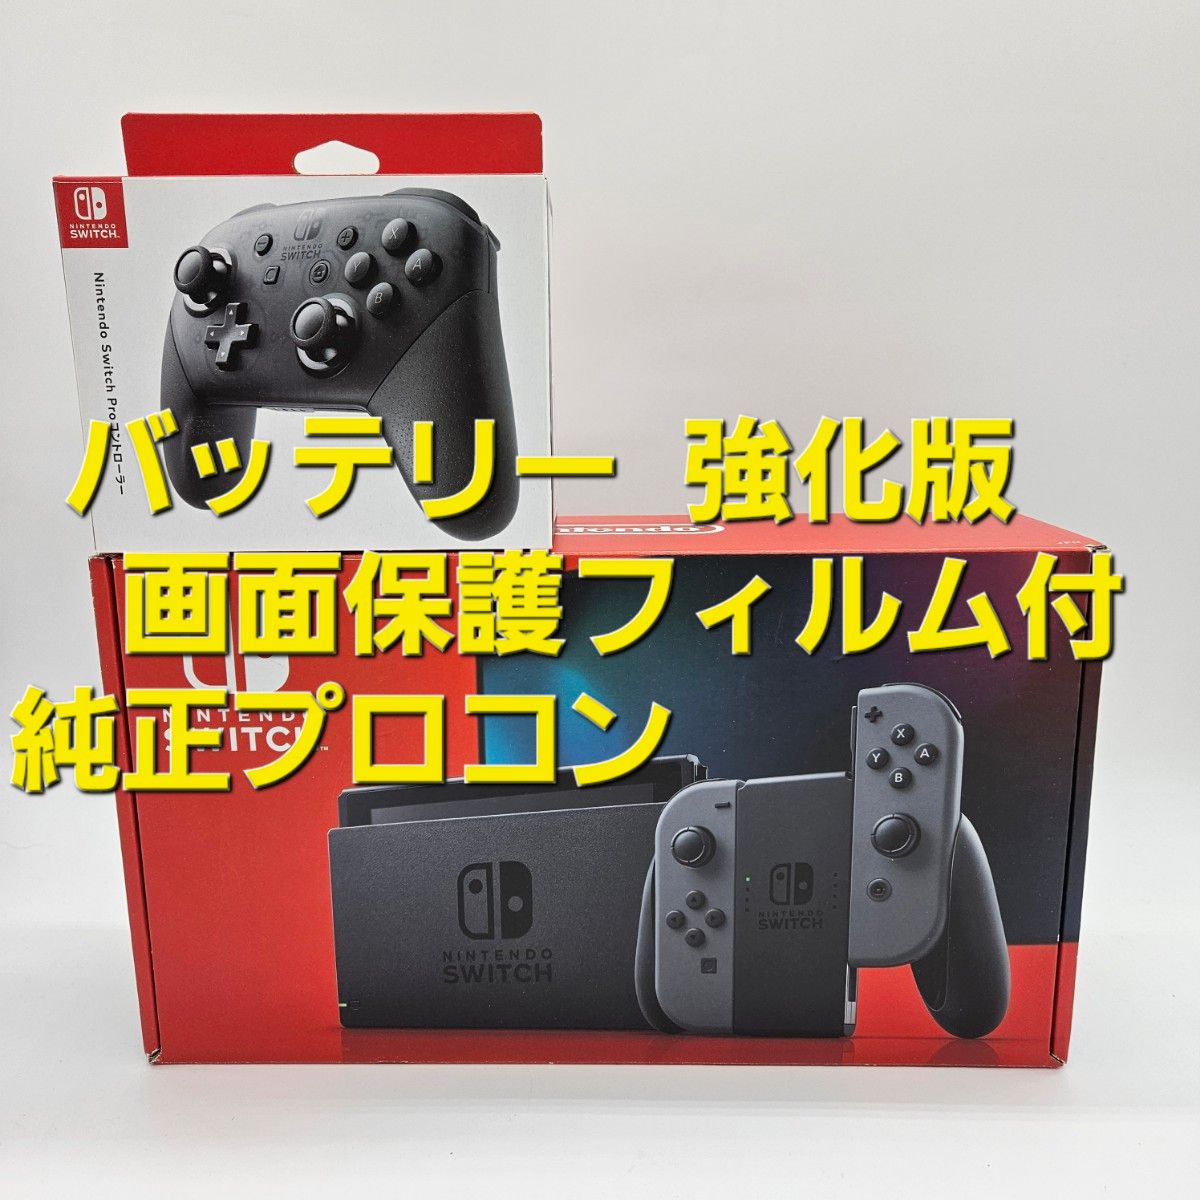 新型 Nintendo Switch ニンテンドースイッチ バッテリー強化版 本体